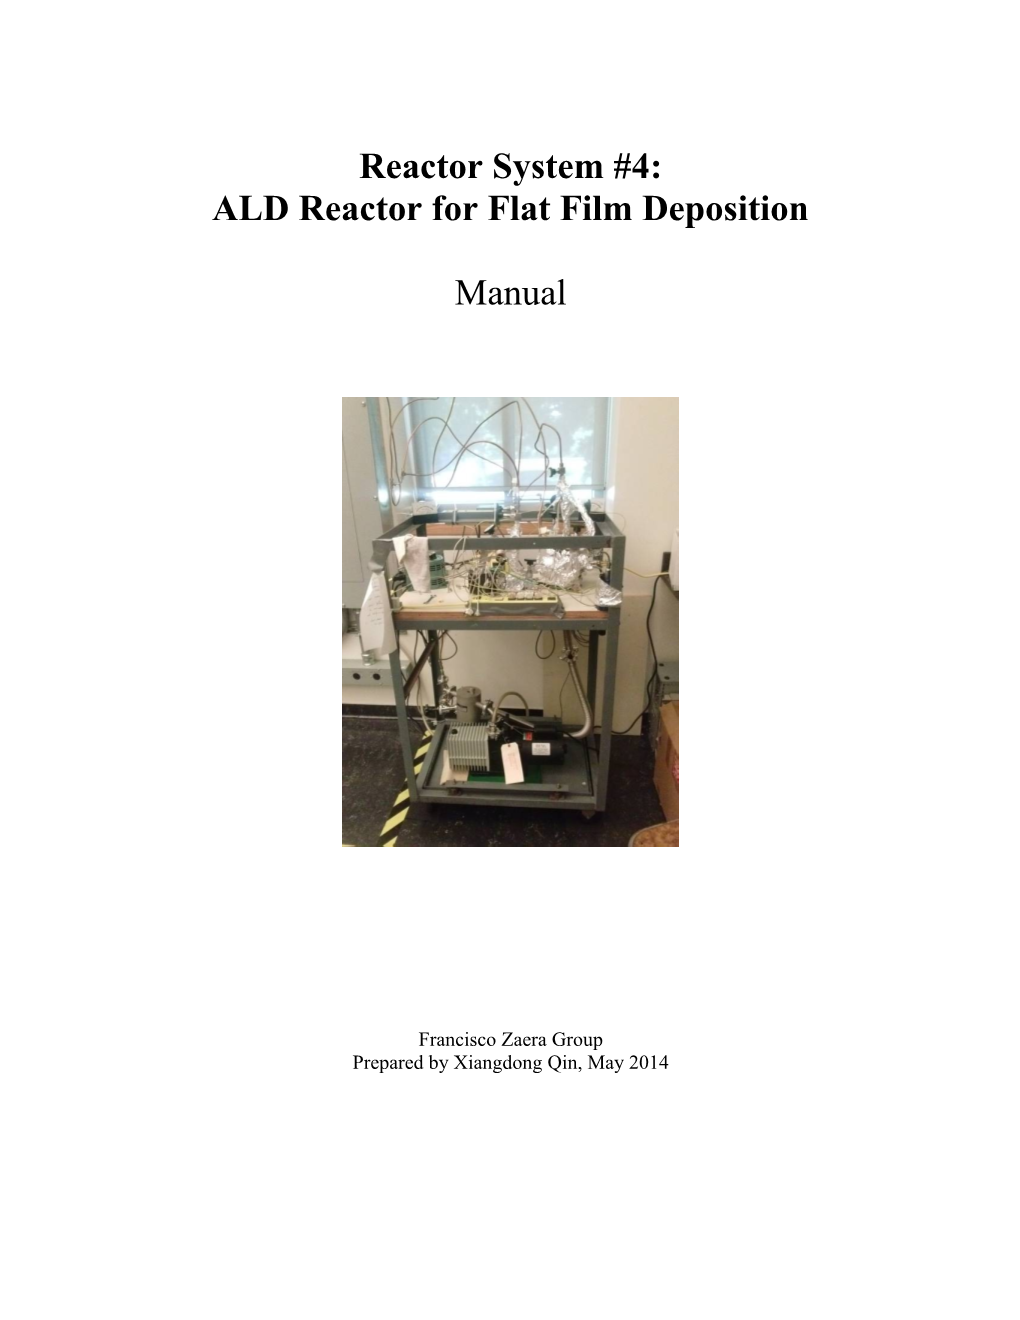 ALD Reactor for Flat Film Deposition